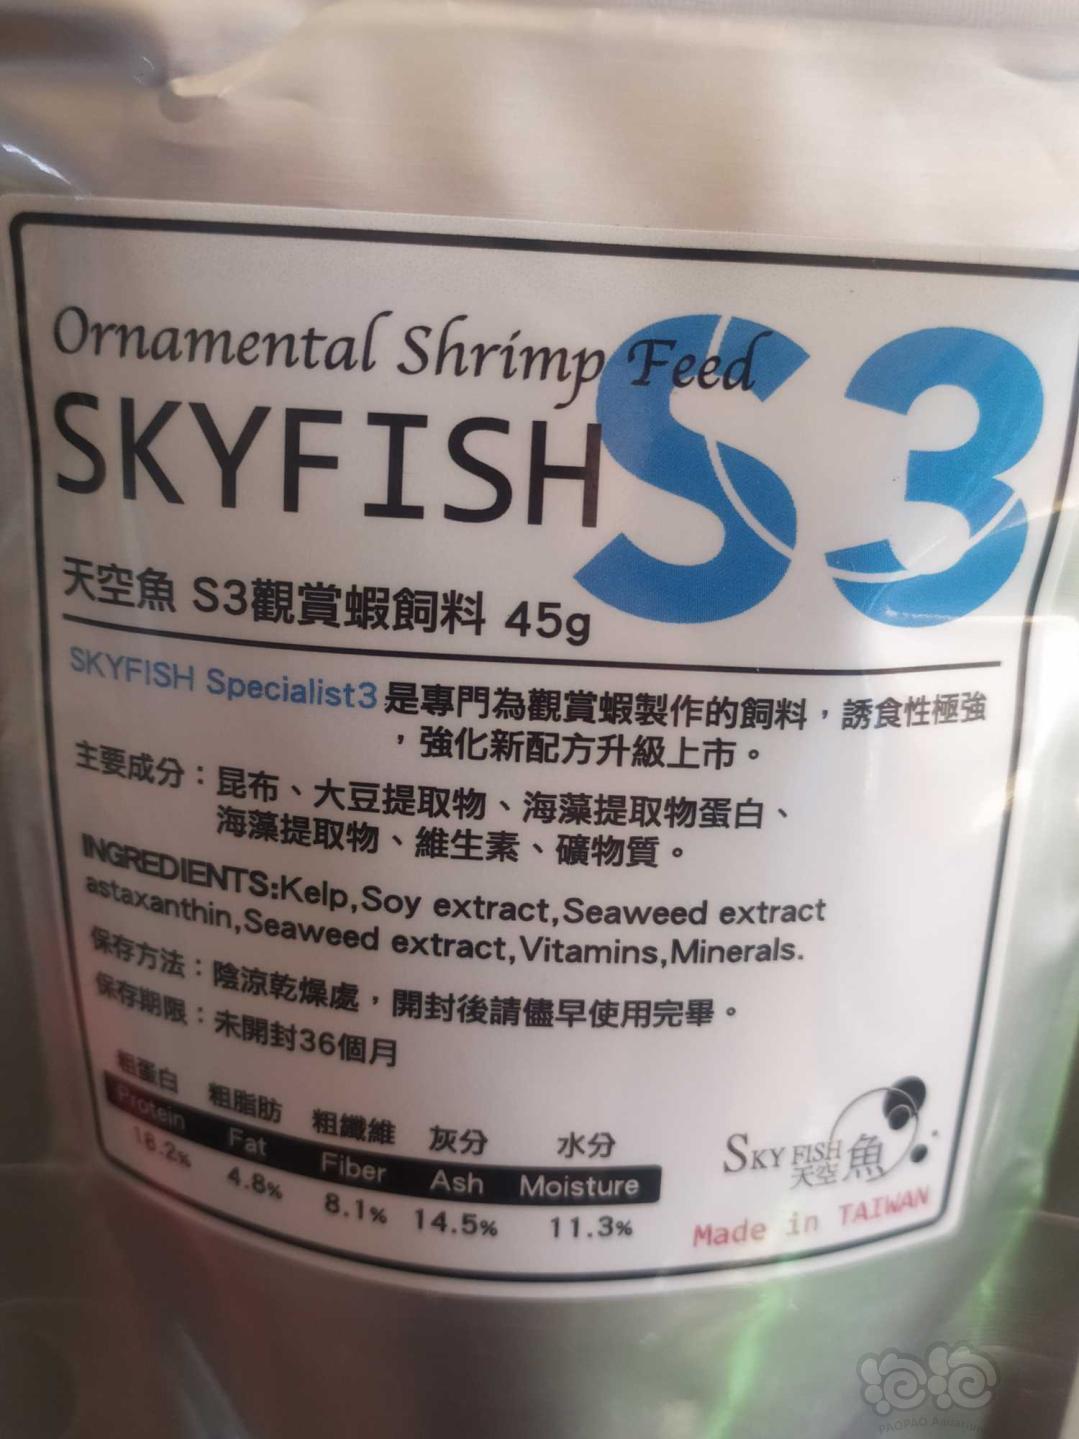 【用品】2019-2-23# RMB拍卖台湾天空鱼虾粮一包-图2